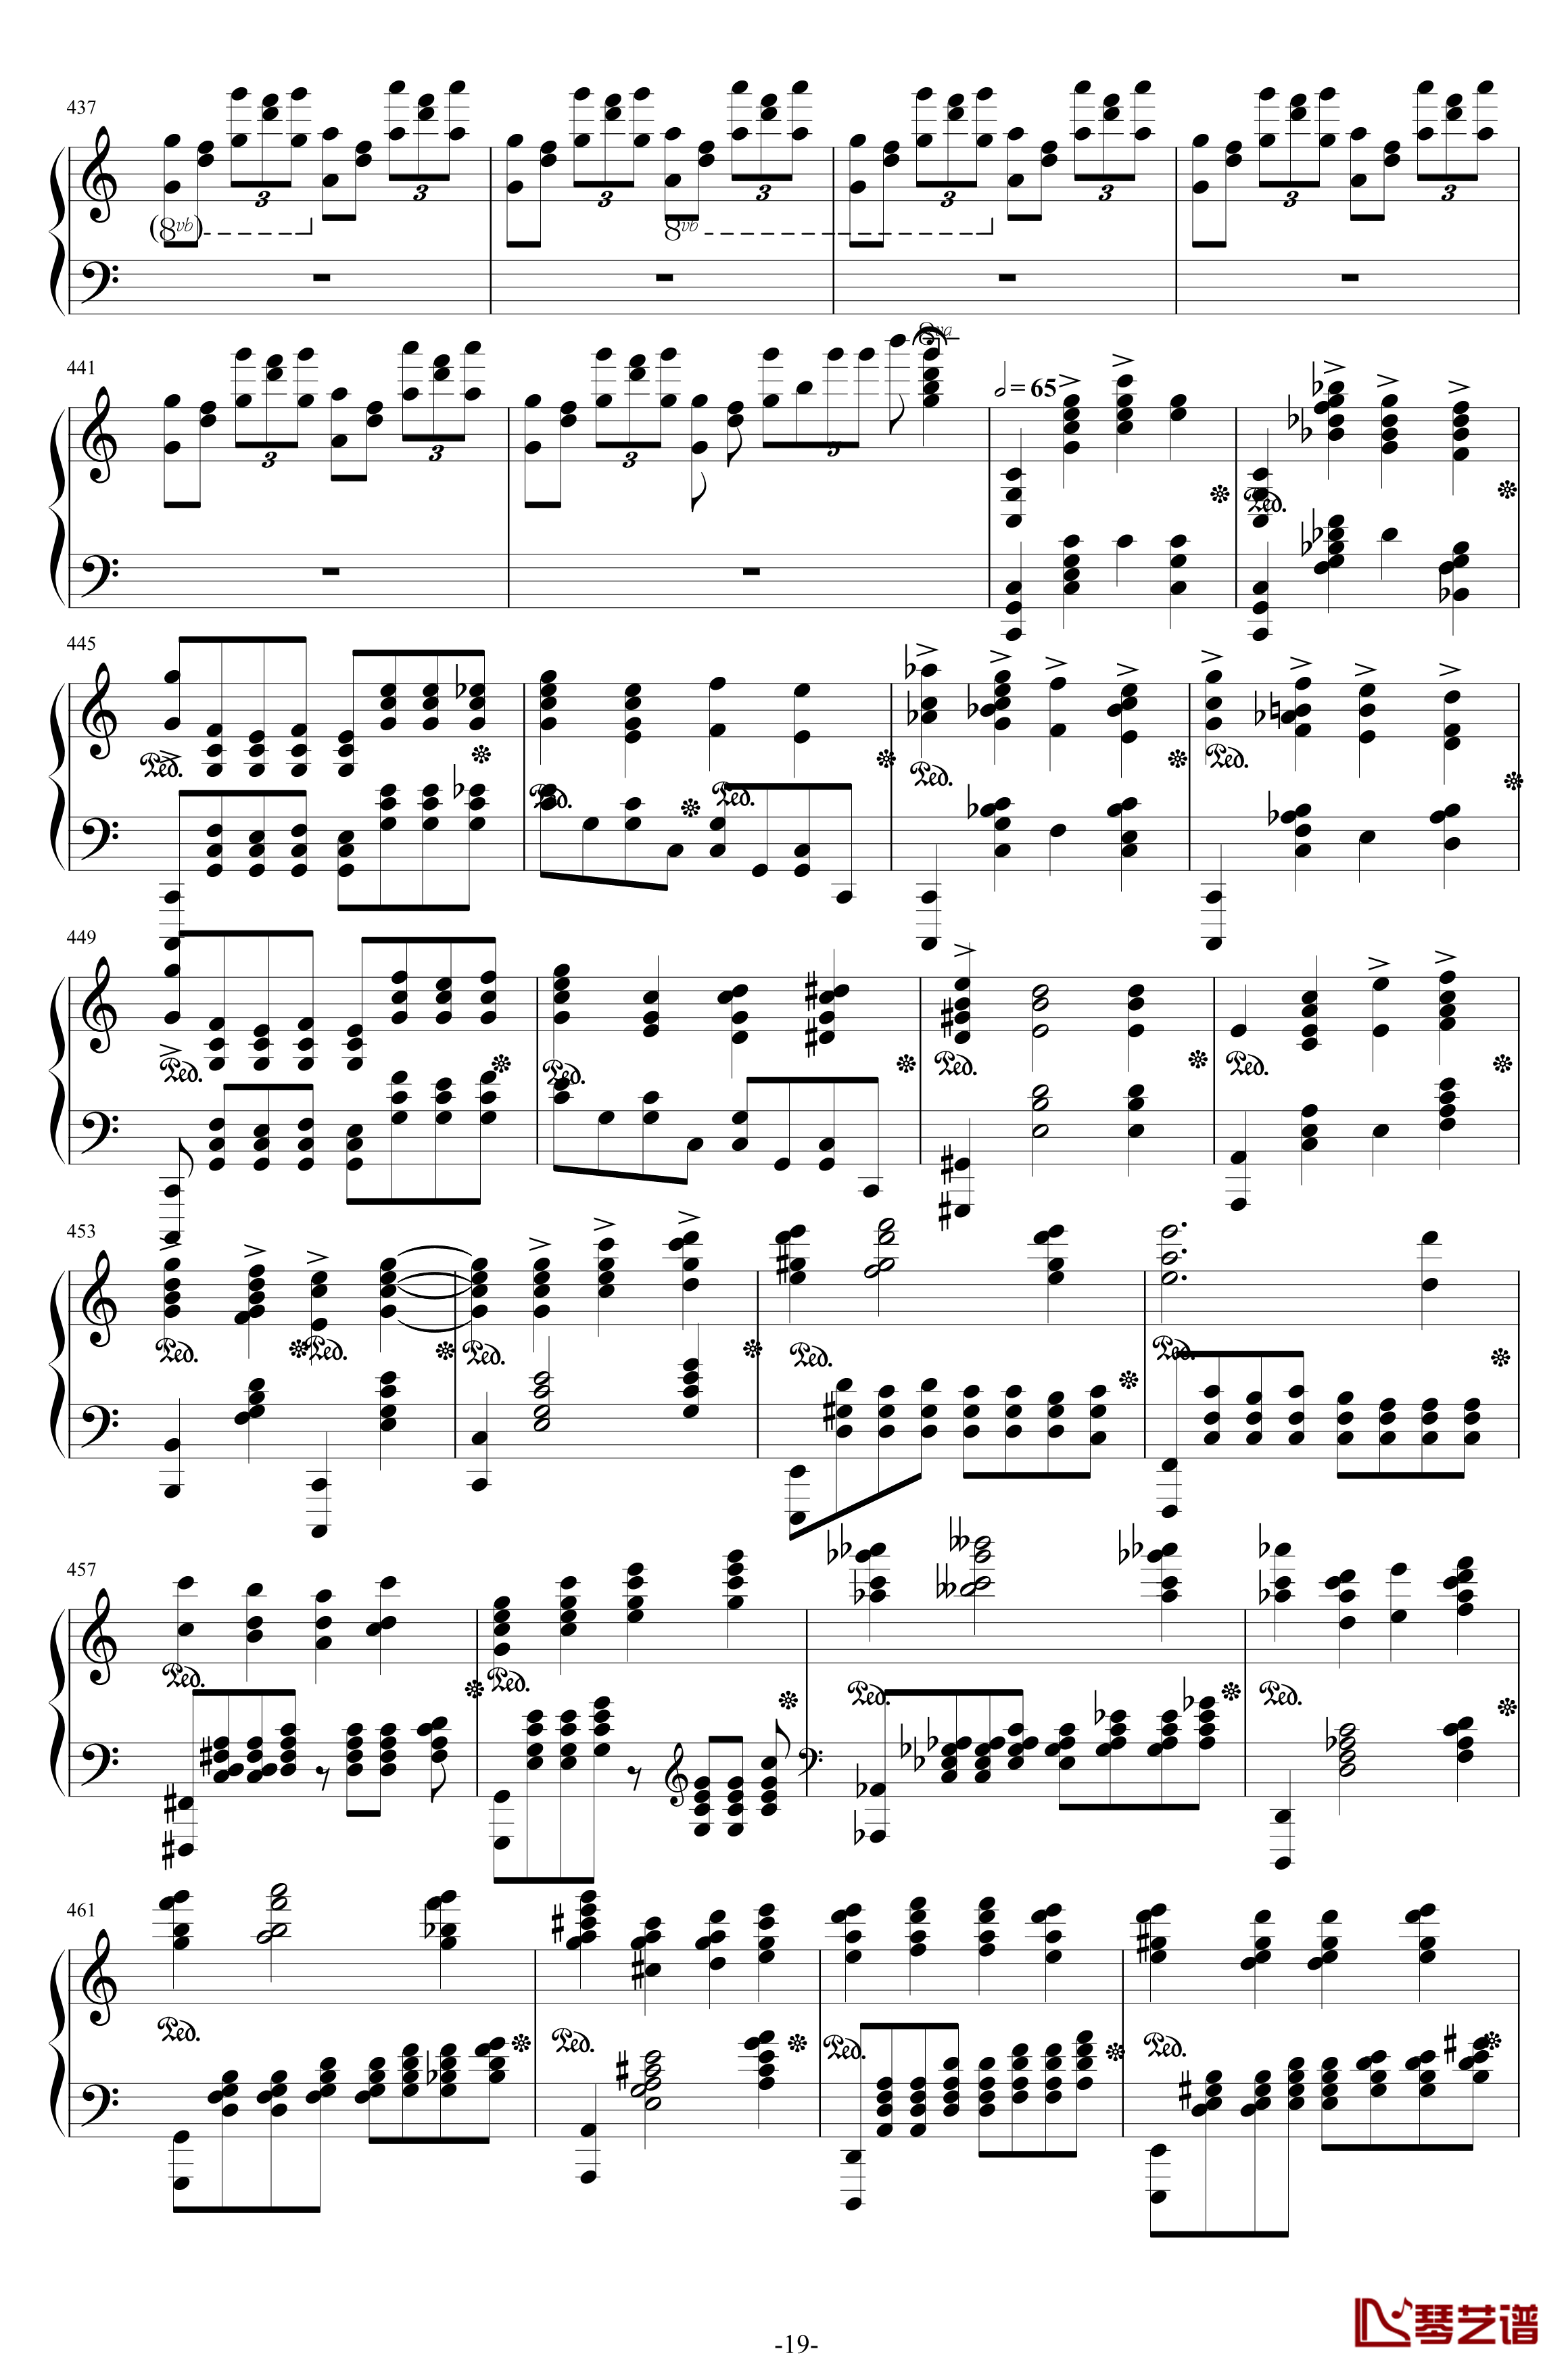 第二钢琴协奏曲钢琴谱-第三乐章独奏版-c小调-拉赫马尼若夫19